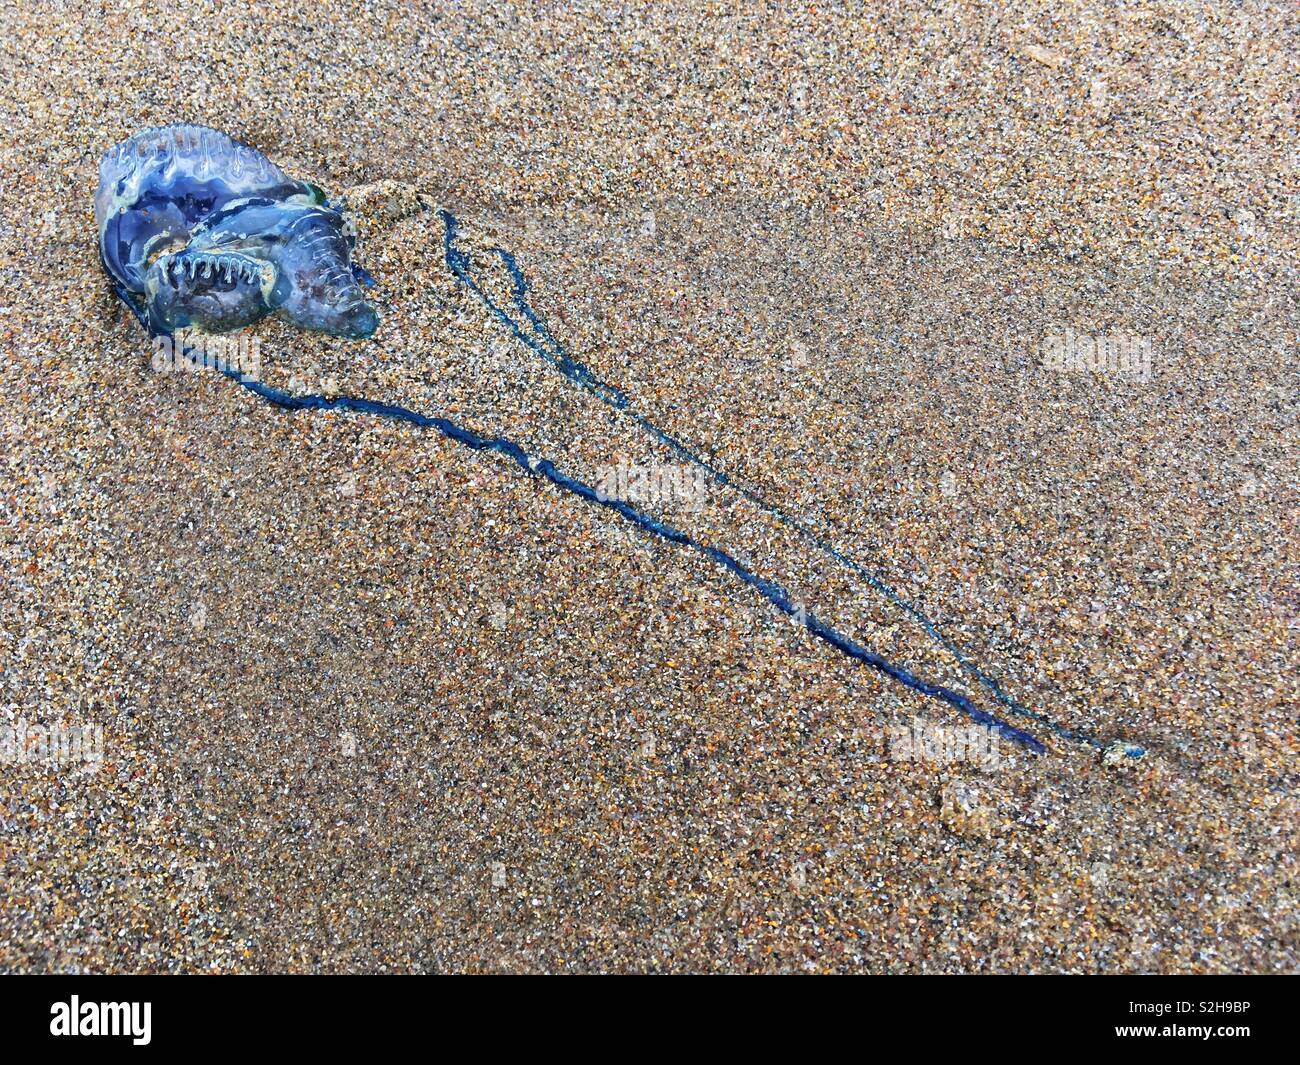 Auch ein bluebottle, wie die portugiesischen Mann des Krieges bekannt, bis auf der Durban South Beach gewaschen liegt. Während in der Regel nicht tödlich, diese Qualle Kreaturen können eine qualvolle Sting liefern. Stockfoto